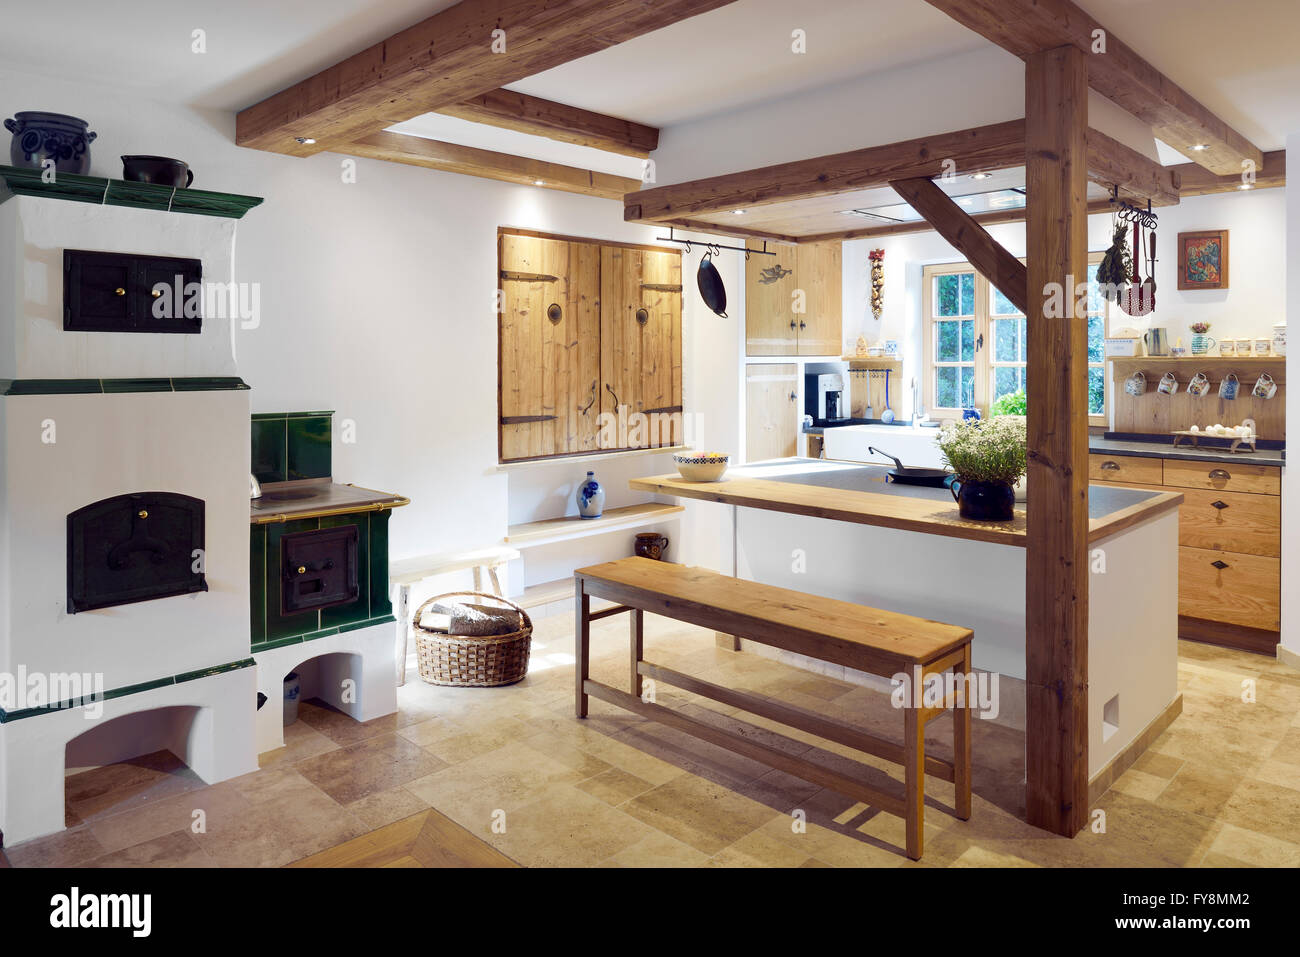 Rustikalen Landhausstil mit Kücheninsel Stockfotografie - Alamy